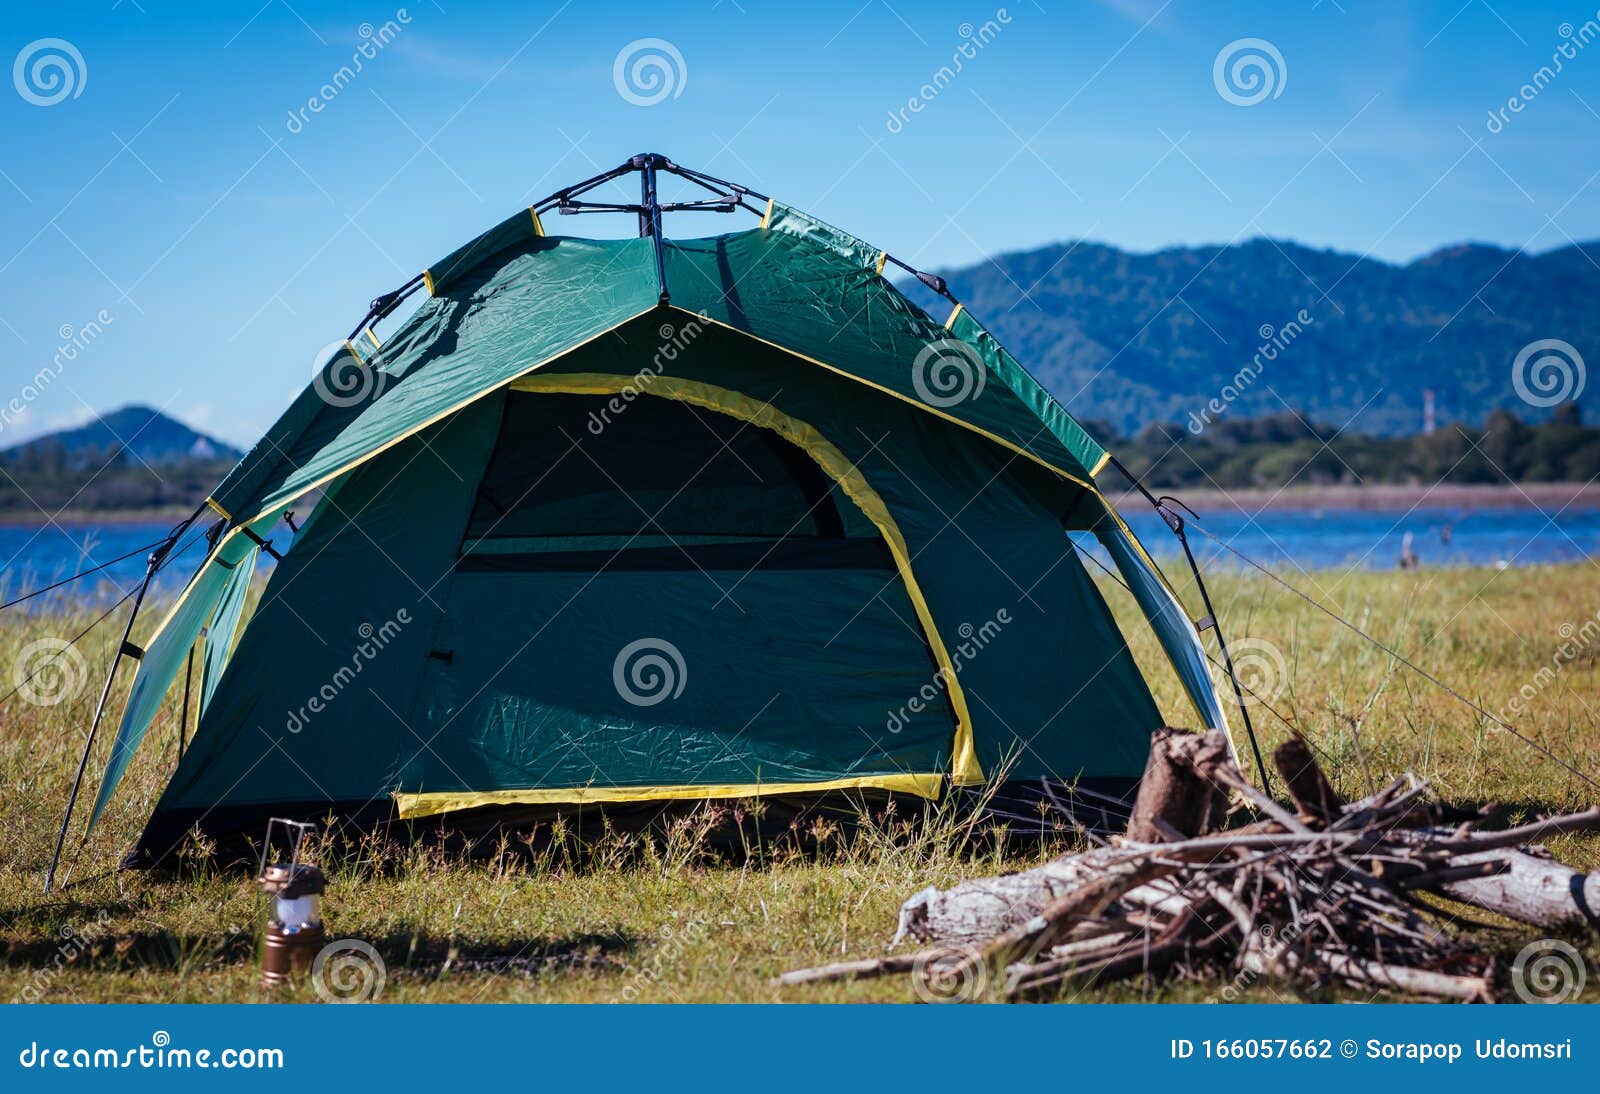 Палатка зелёная Аляска. Camping green